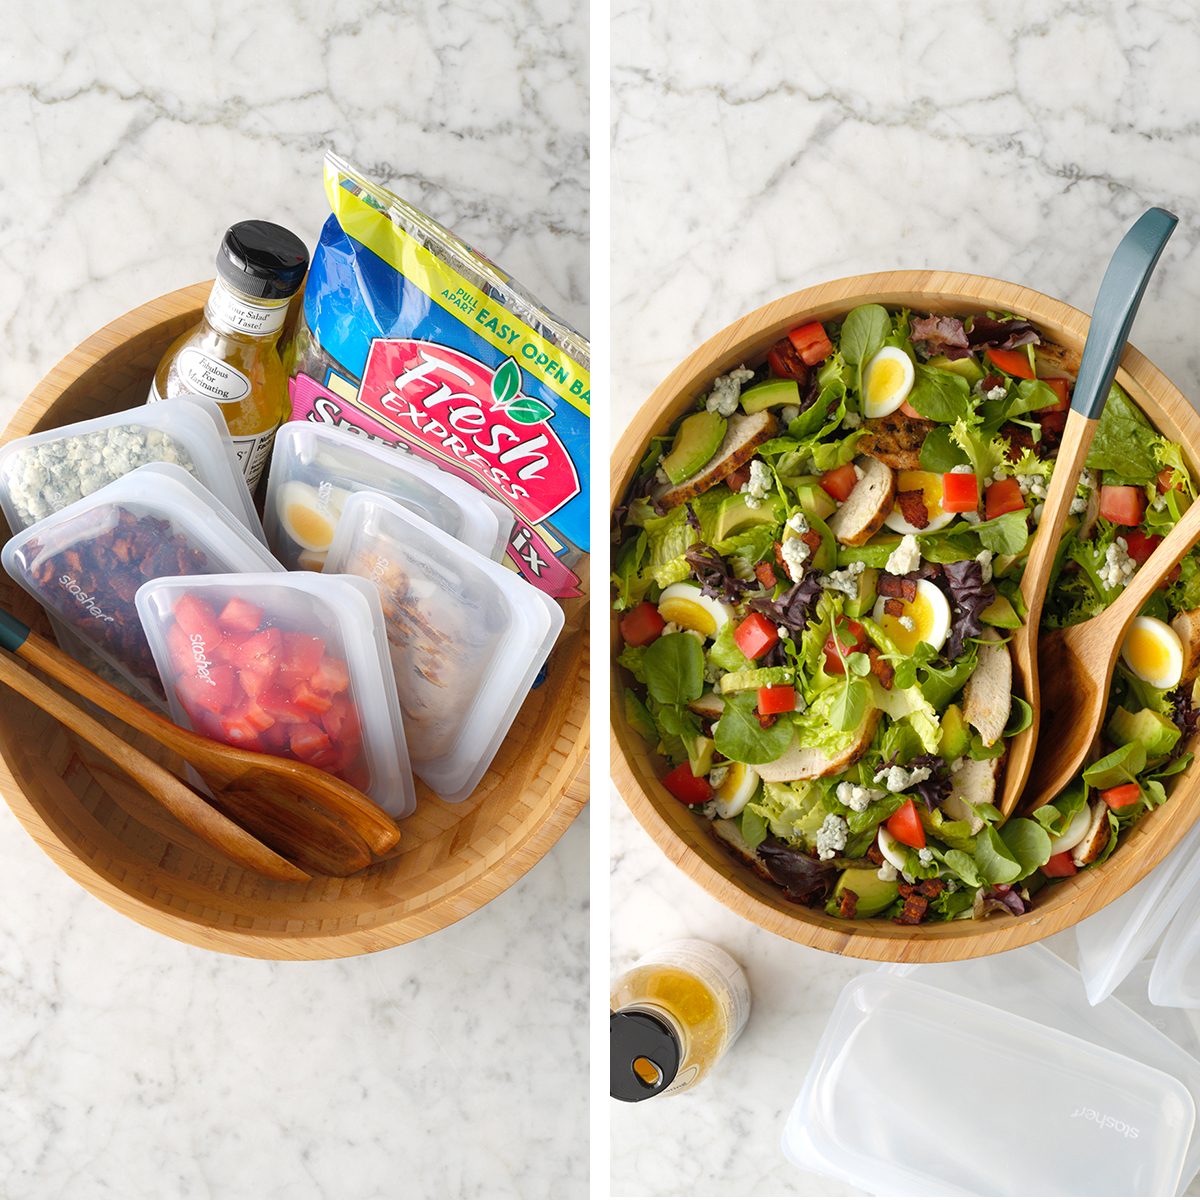 https://www.tasteofhome.com/wp-content/uploads/2019/09/make-and-take-salad-kit-copy.jpg?fit=700%2C700